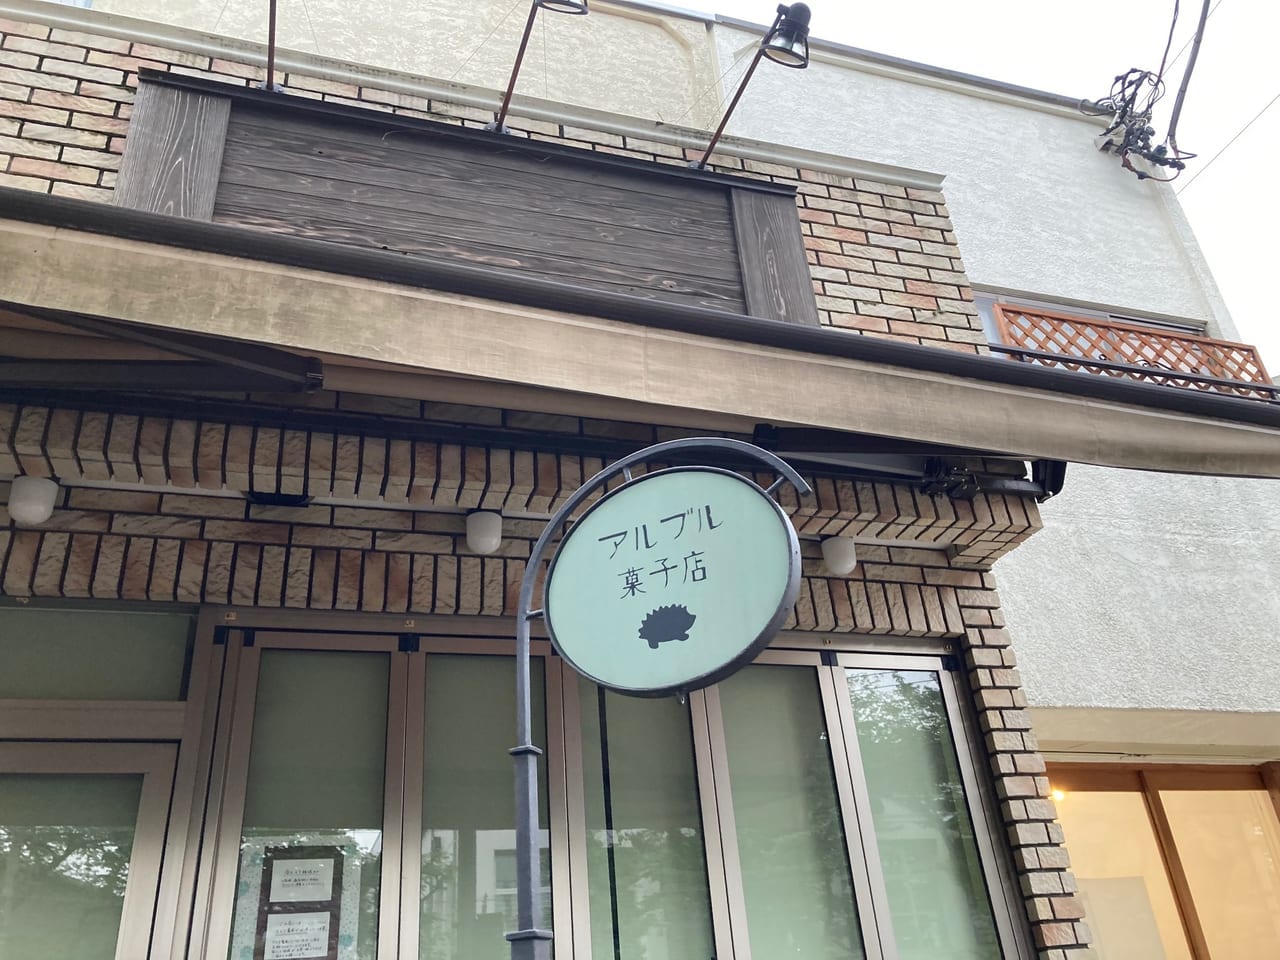 富士見台の『アルブル菓子店』が新店舗へ移転。現在の場所での営業は5月15日までを予定。